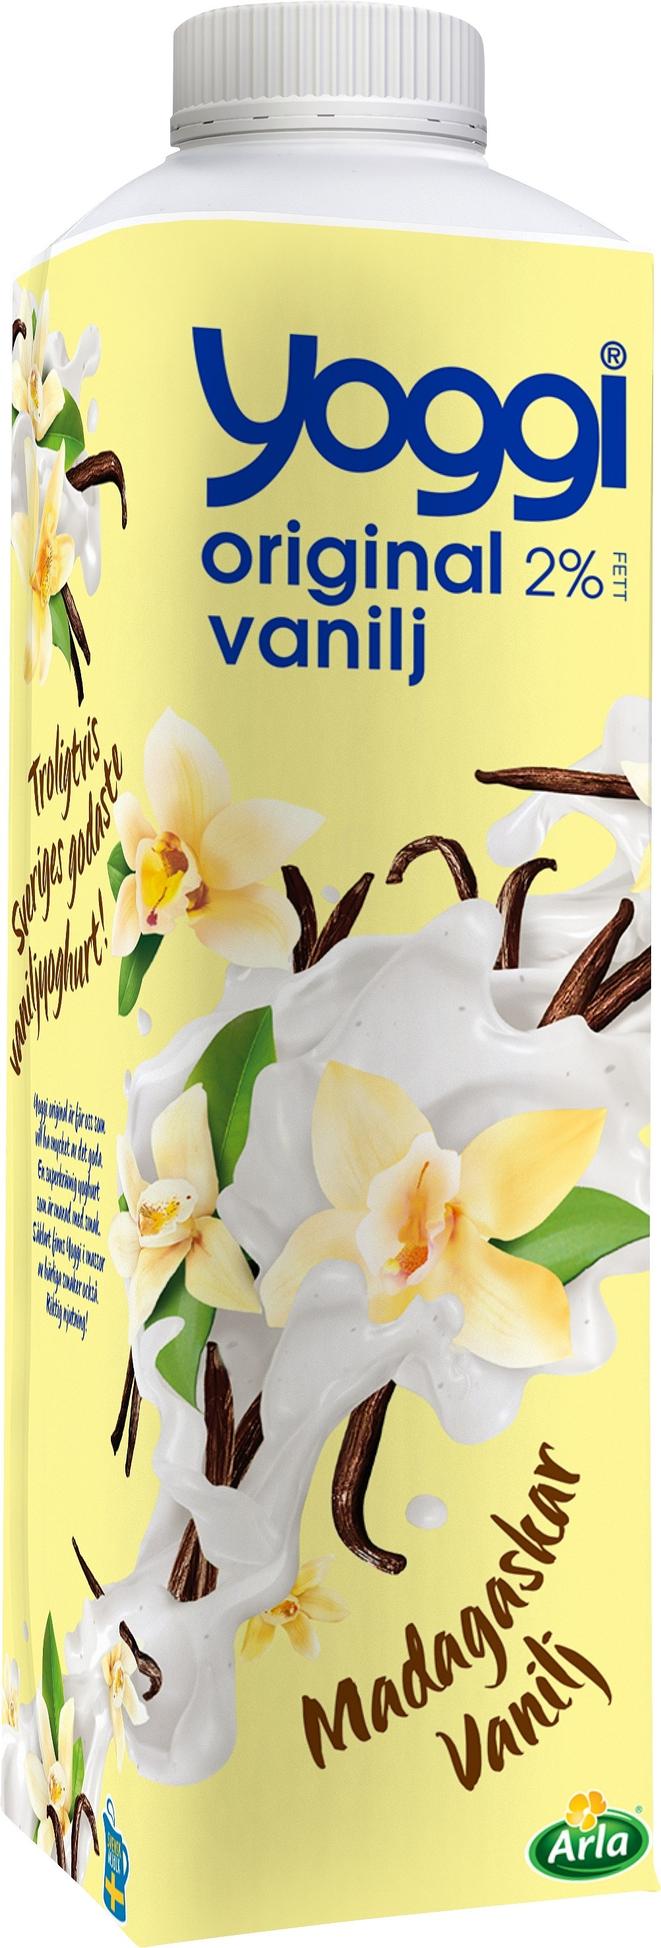 Vaniljyoghurt Original Madagaskar vanilj för 29,95 kr på Coop